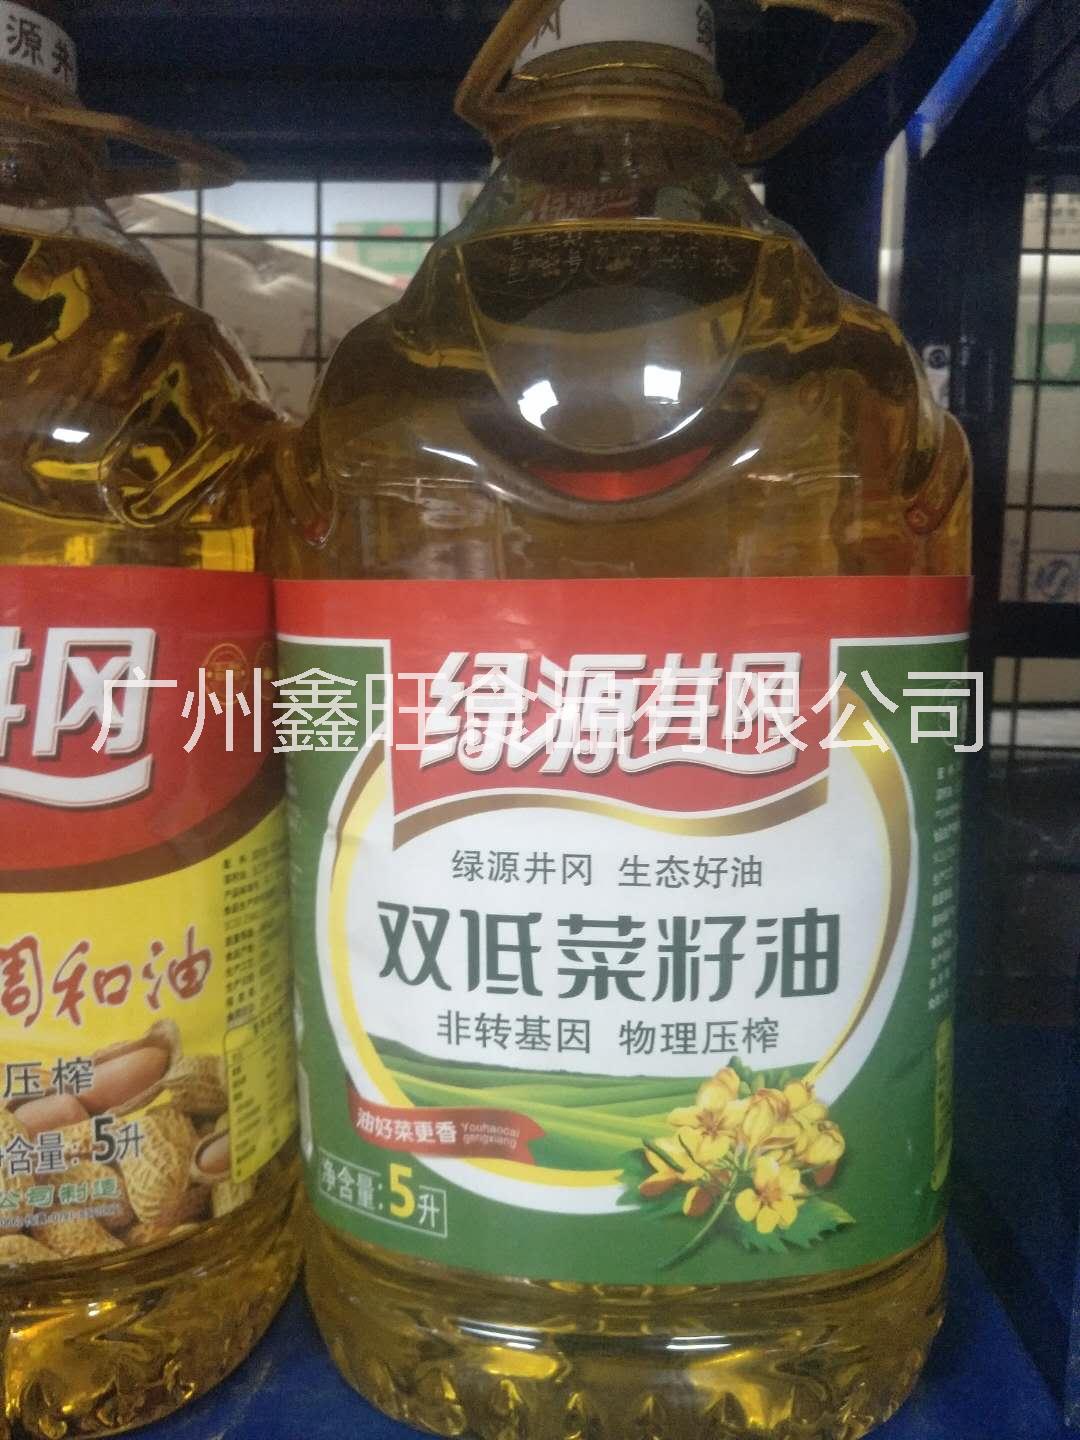 菜籽油        菜籽油供应商       菜籽油的功效         菜籽油的价格